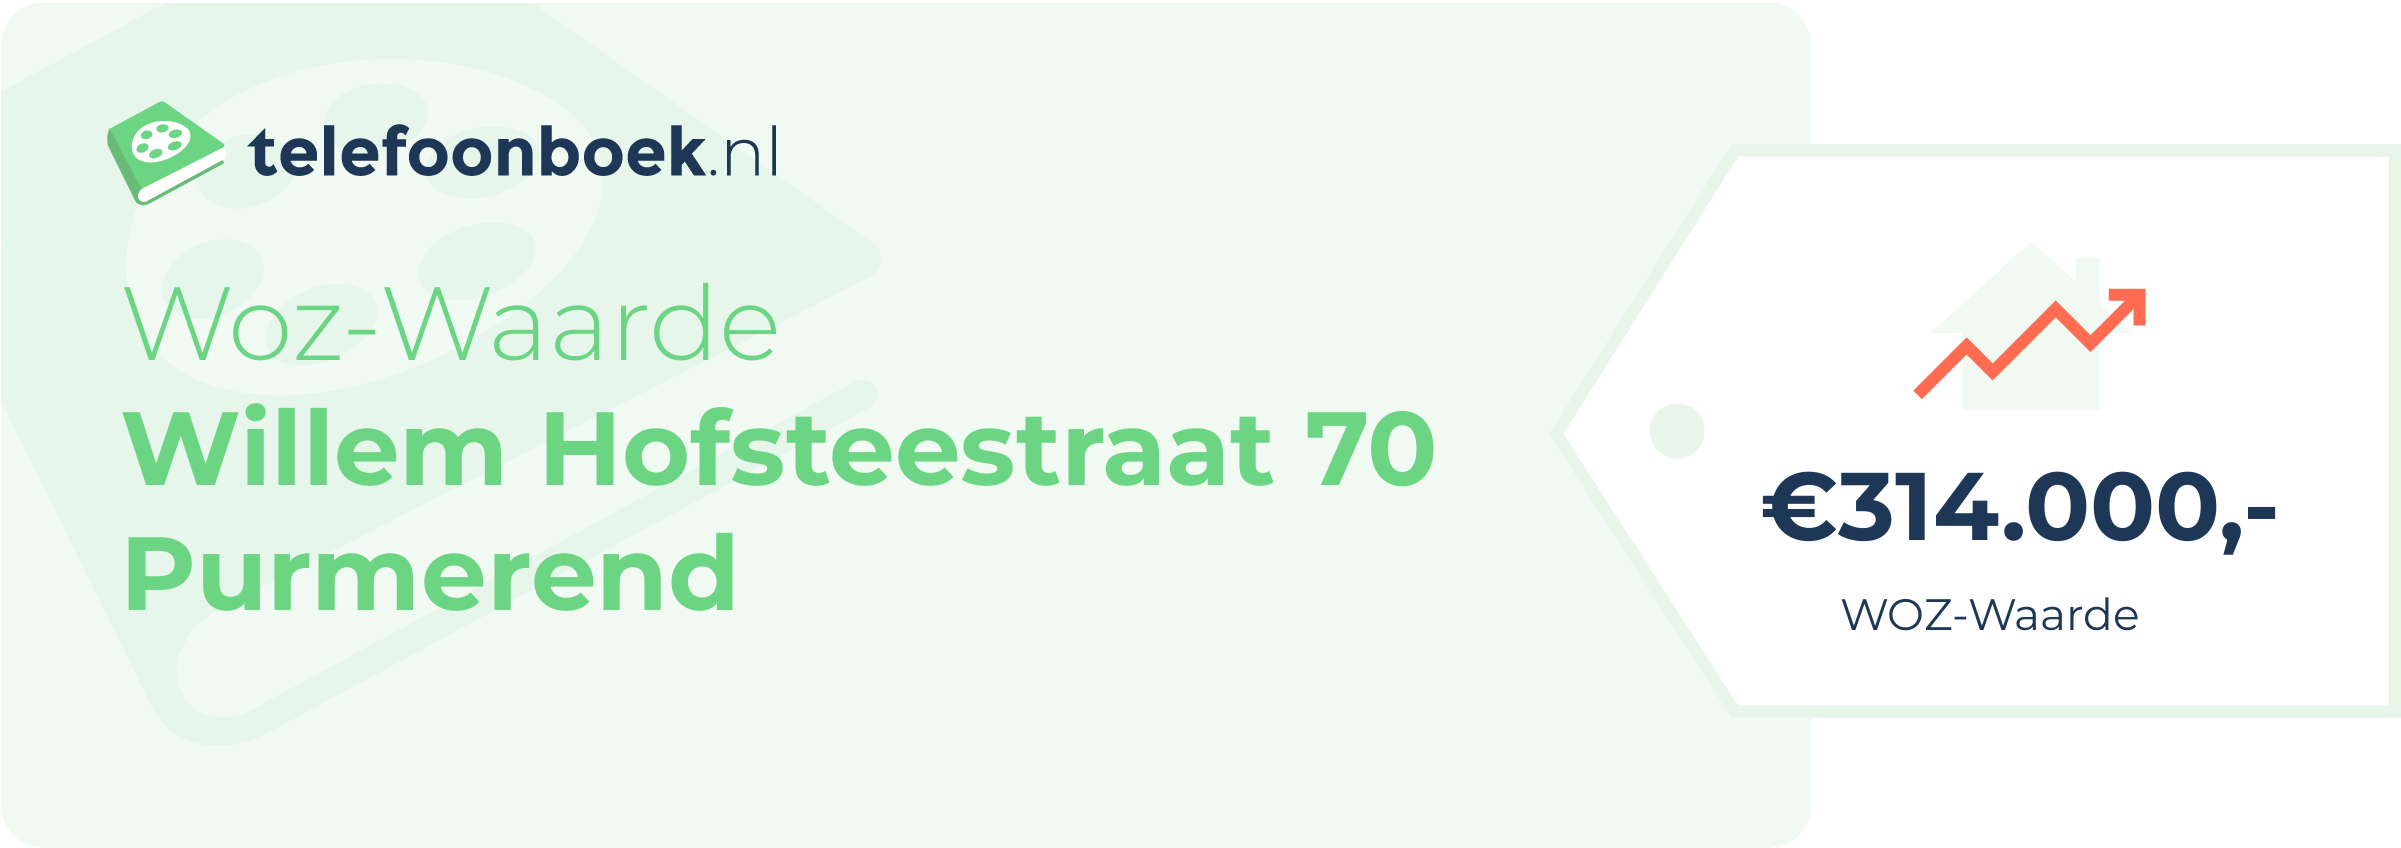 WOZ-waarde Willem Hofsteestraat 70 Purmerend